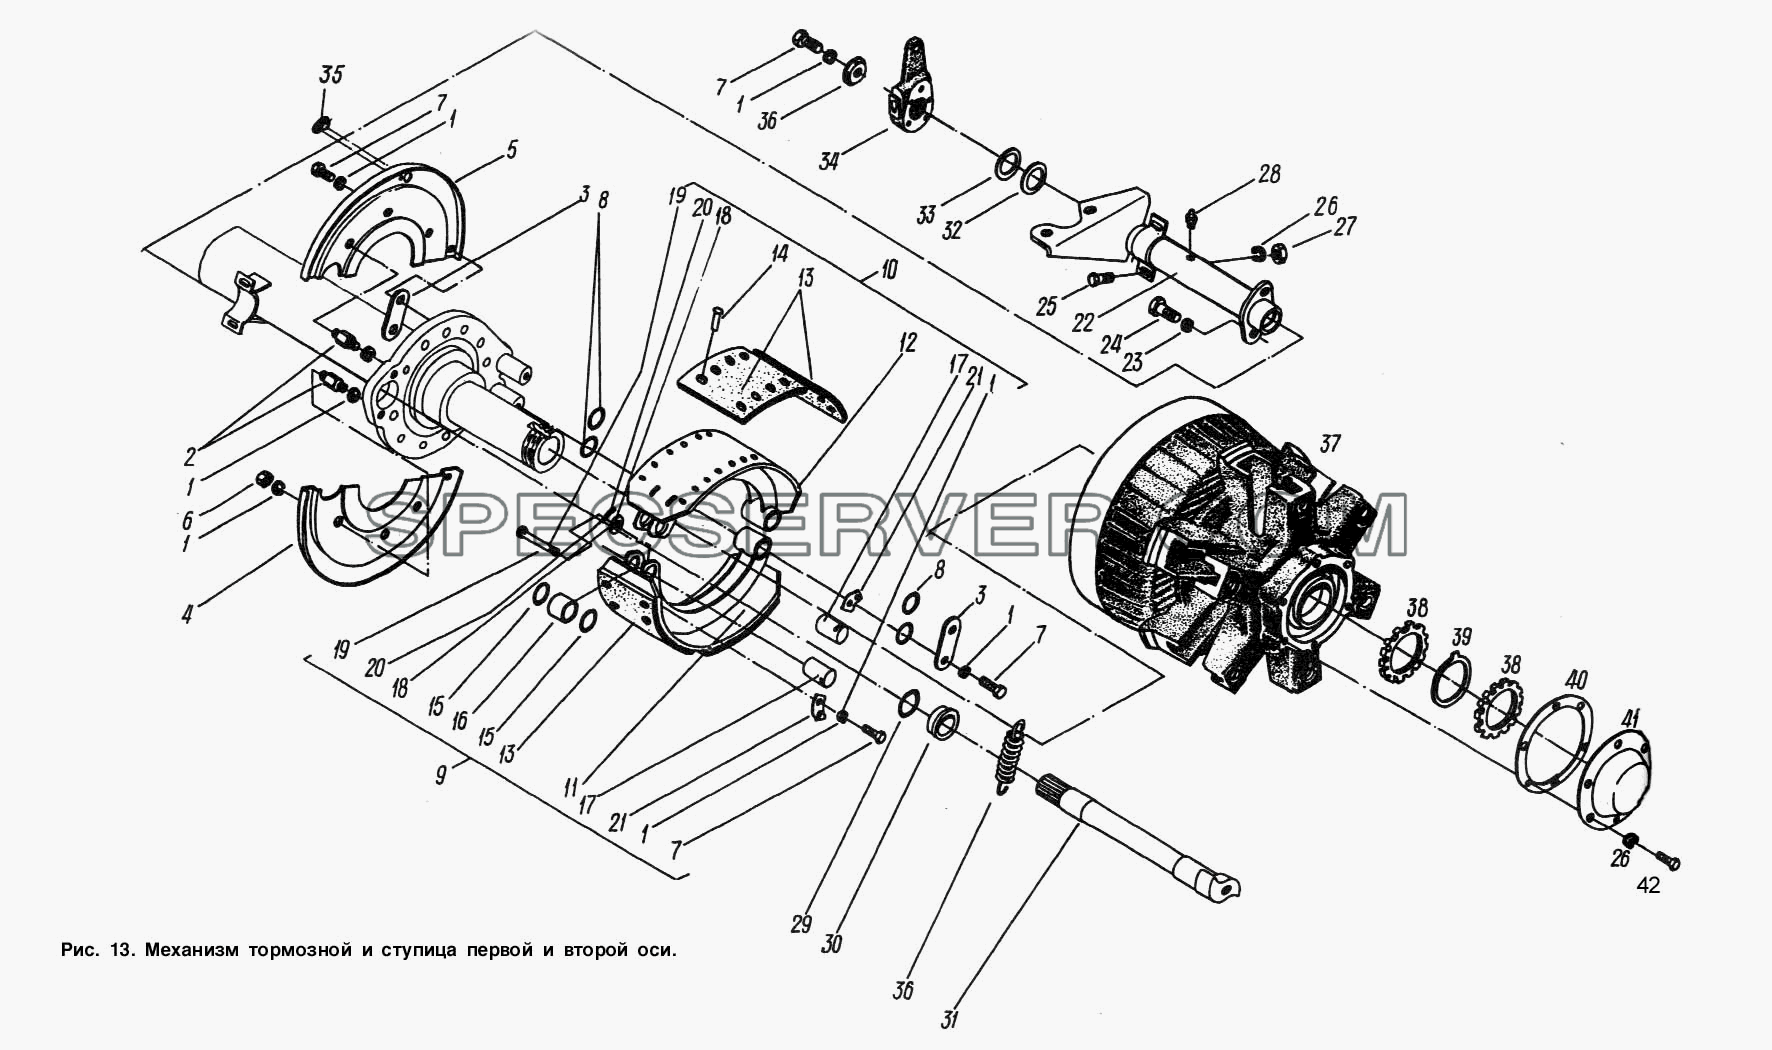 Механизм тормозной и ступица первой и второй оси для МАЗ-93892 (список запасных частей)